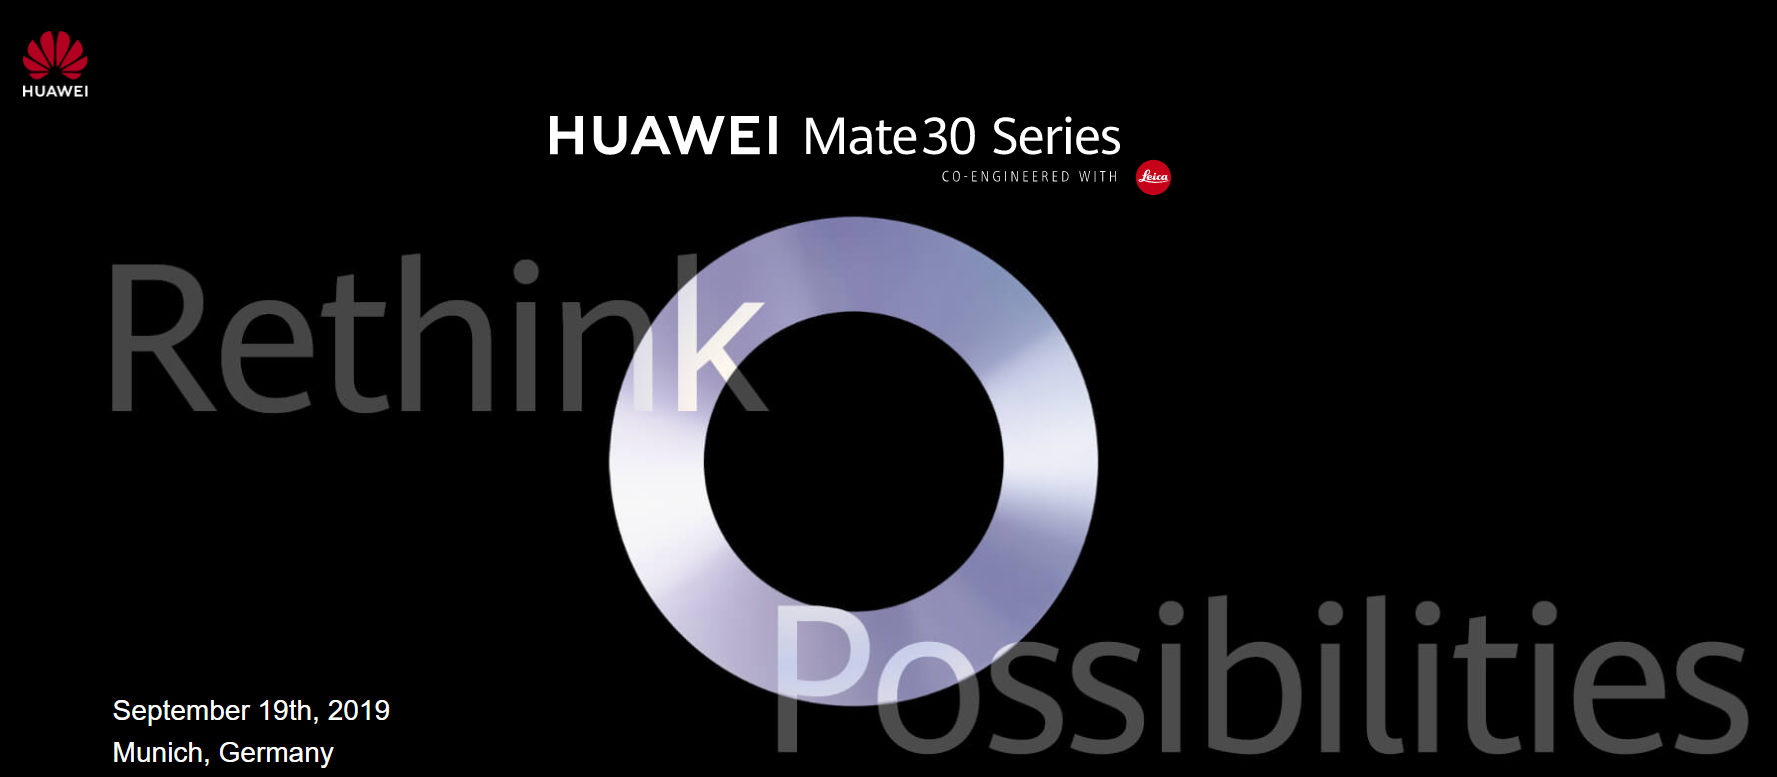 【快訊報報】華為 HUAWEI Mate30 系列新機 將在 9/19 德國慕尼黑發表 - HUAWEI - 科技狗 3C DOG